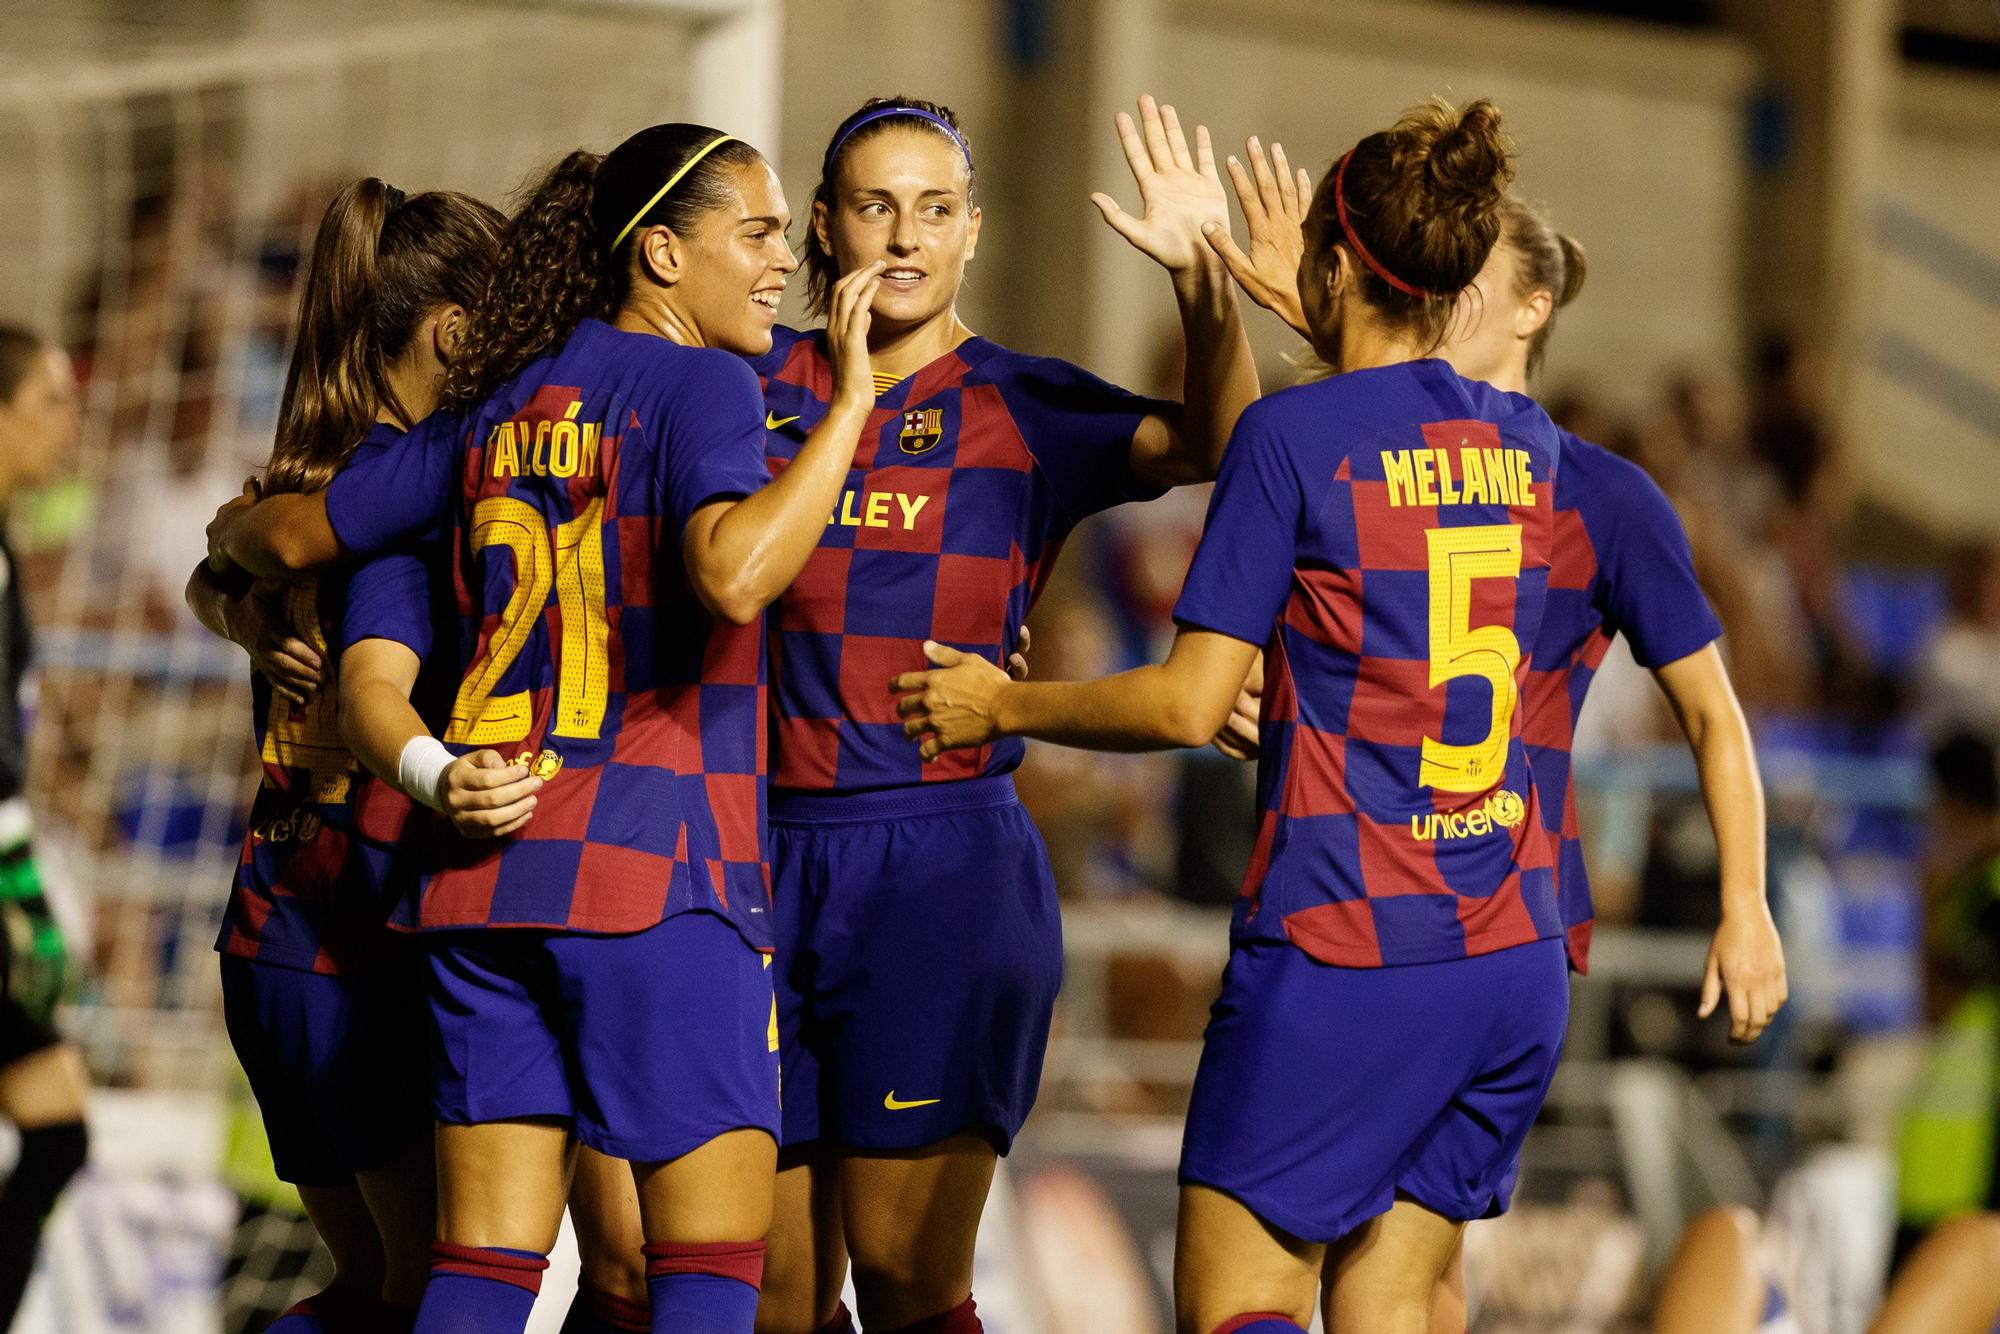 El Barça renueva a Crnogorcevic, Falcón y Melanie